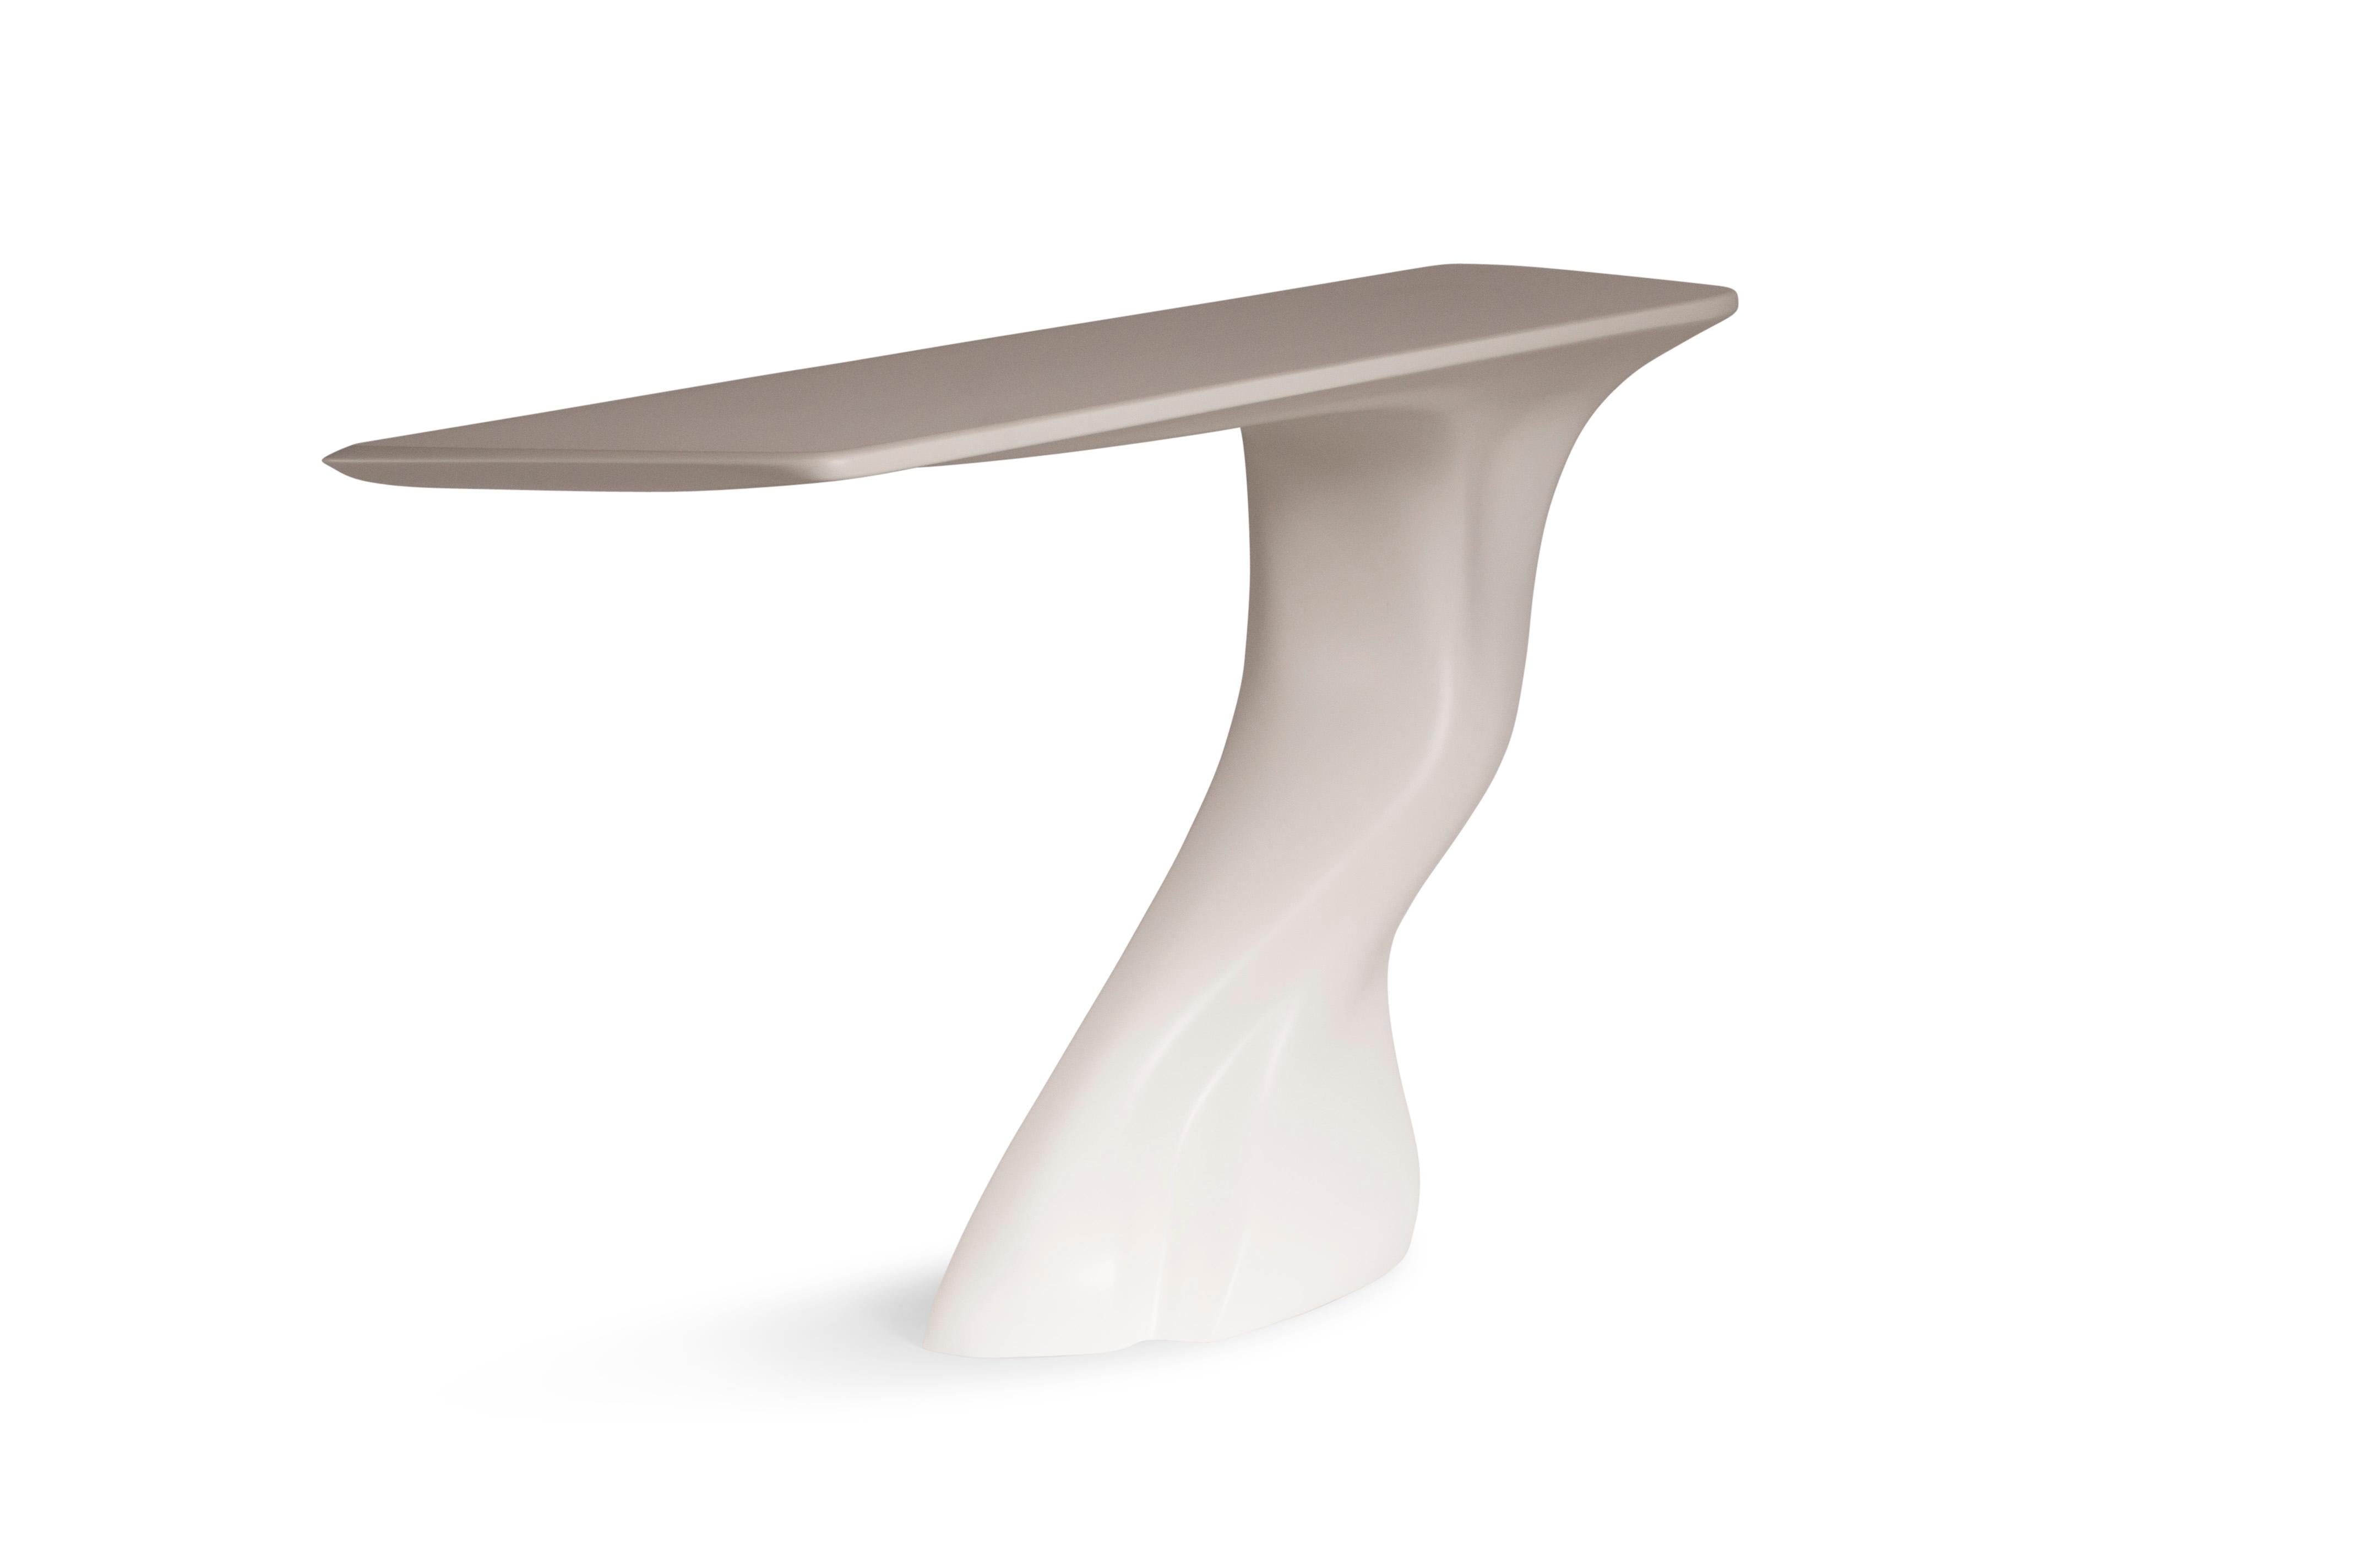 Der Konsolentisch Frolic ist ein stilvoller, futuristischer, skulpturaler Kunsttisch mit einer dynamischen Form, entworfen und hergestellt von Amorph. Der Konsolentisch Frolic ist aus Holz gefertigt und weiß matt lackiert. Von Natur aus